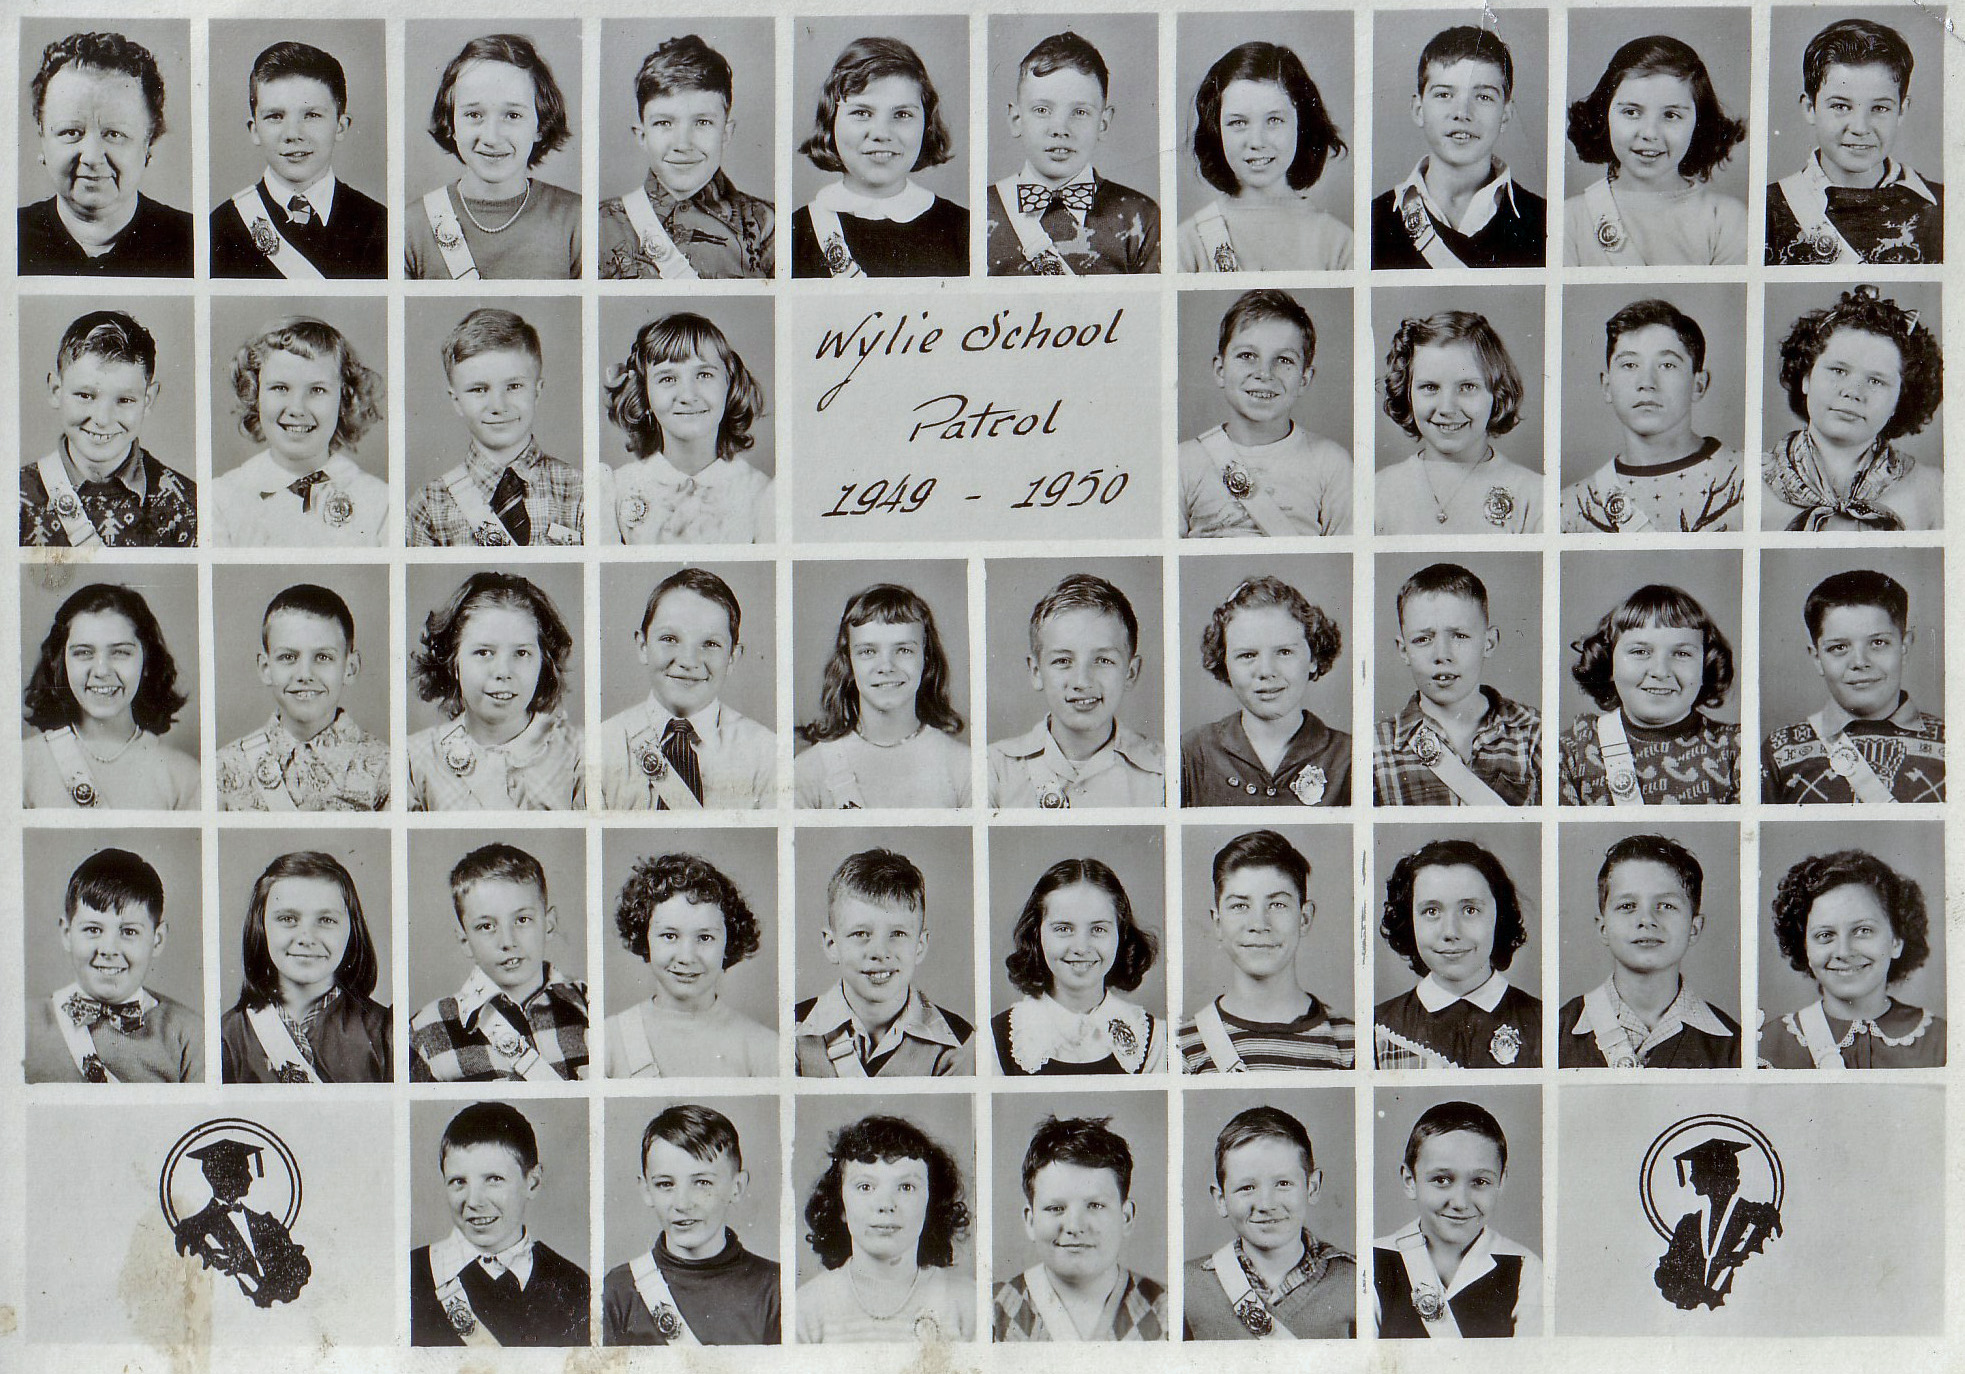 WYLIE SCHOOL PATROL
1949-1950